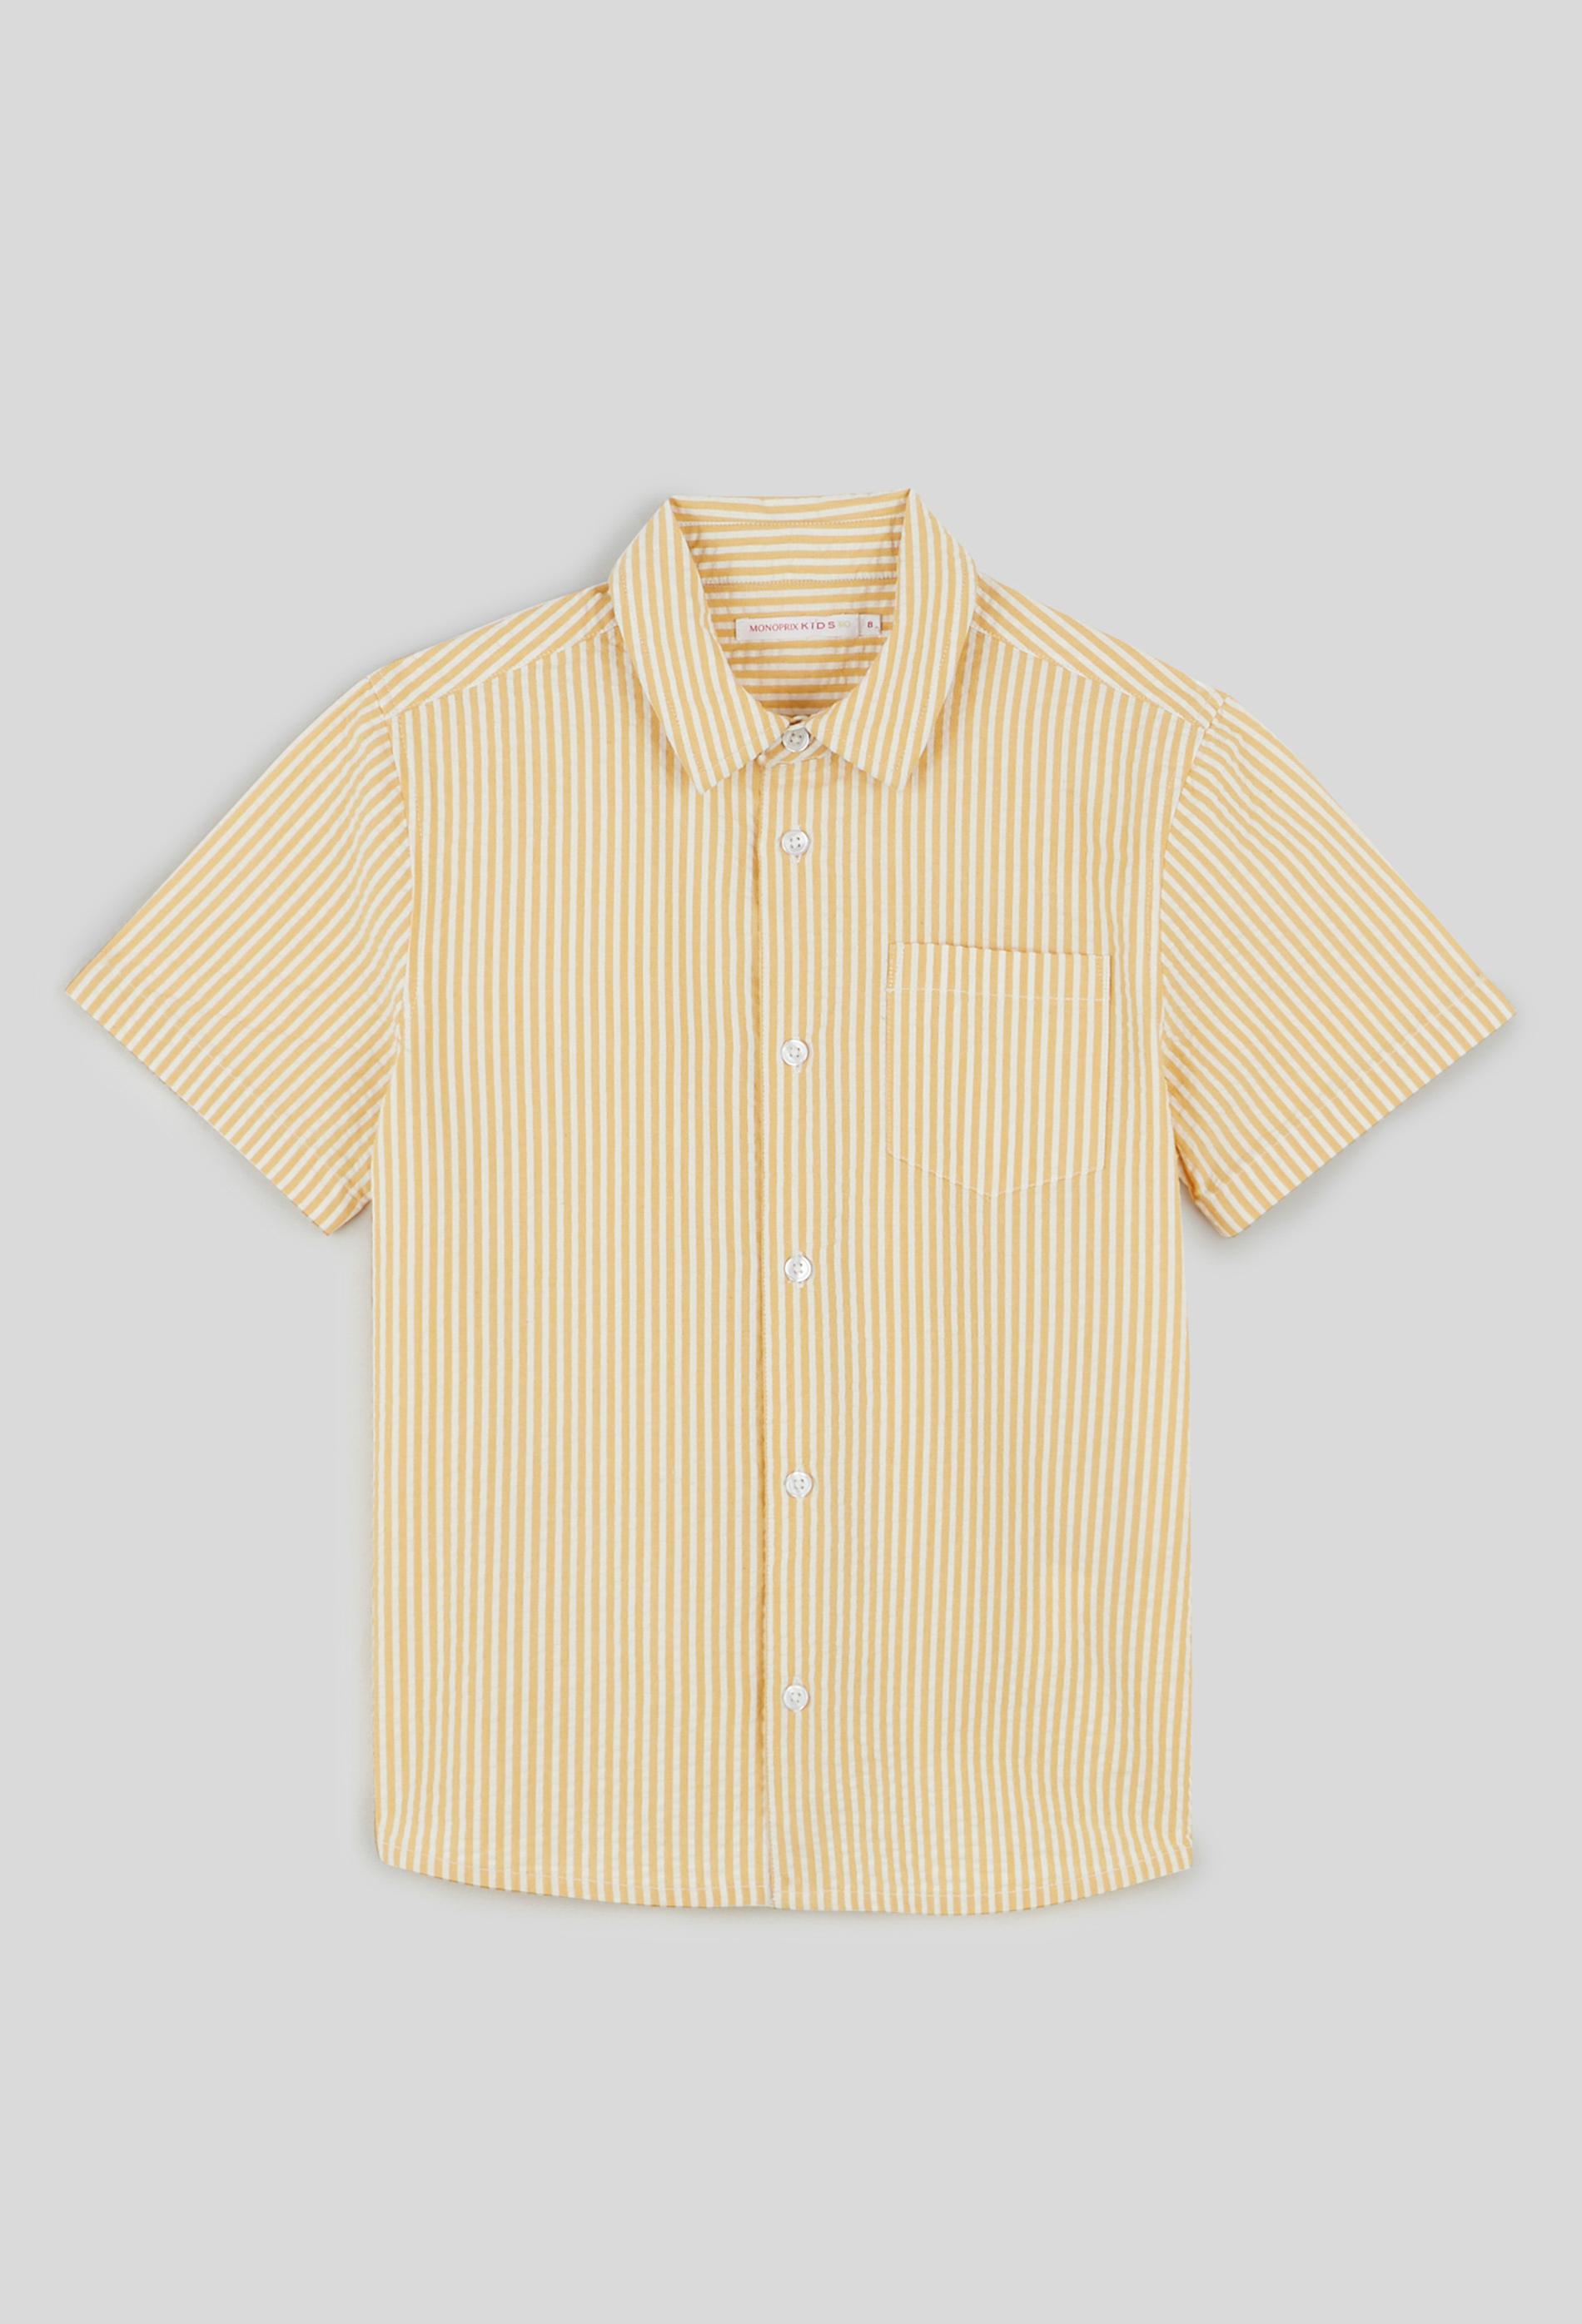 Chemise manches courtes rayée avec poche poitrine en coton BIO 3 ans jaune